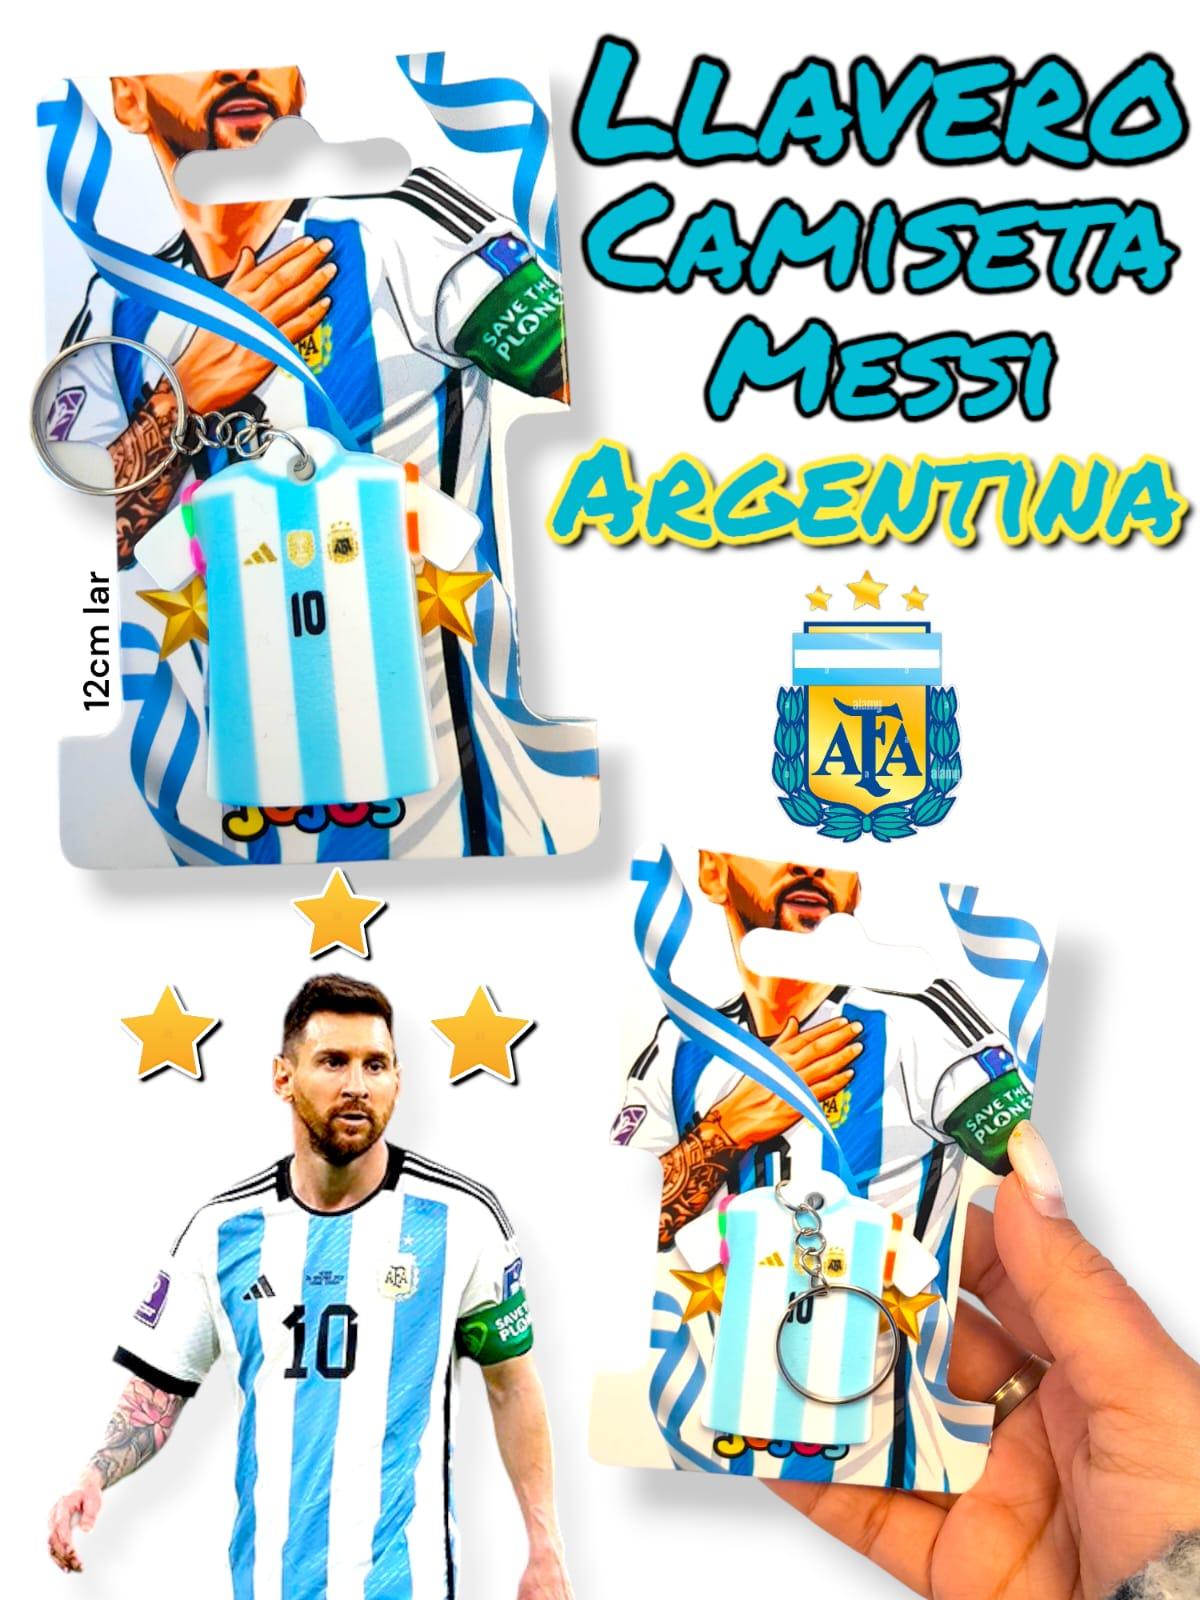 Llavero Camiseta Messi Argentina En Exhibidor 